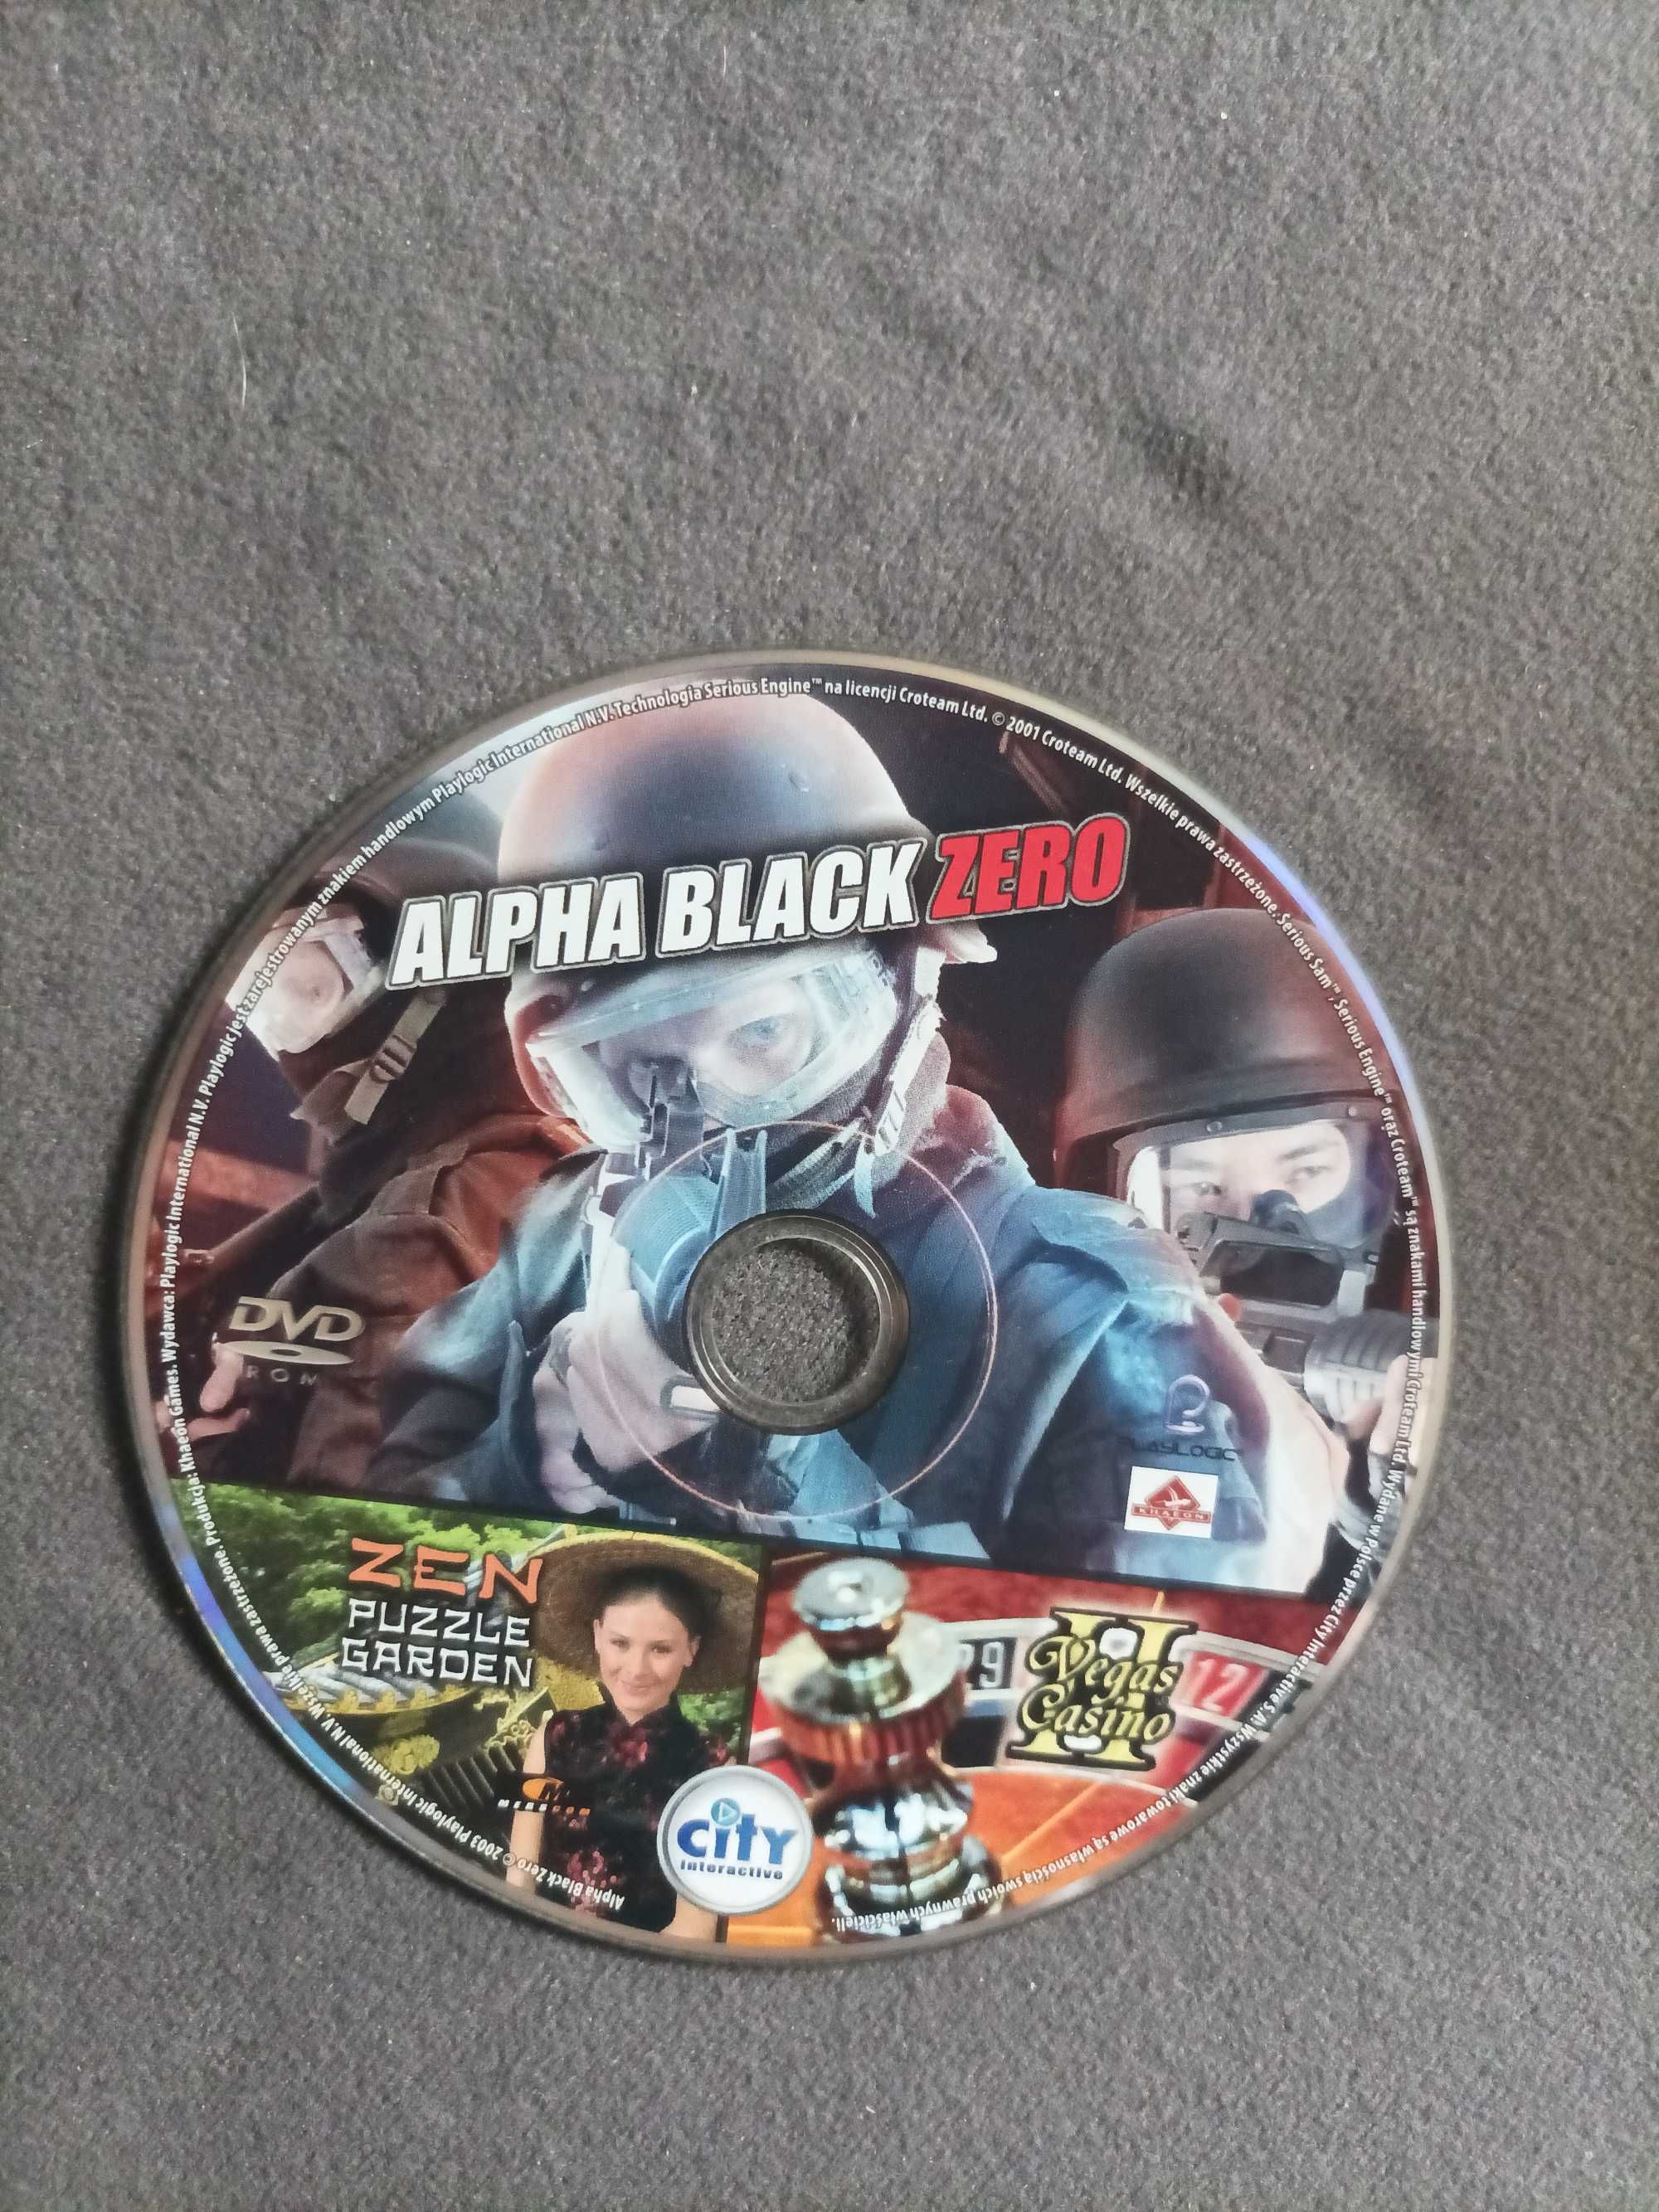 Alpha Black Zero, Zen Puzzle Garden, Vegas Casino II Gry PC